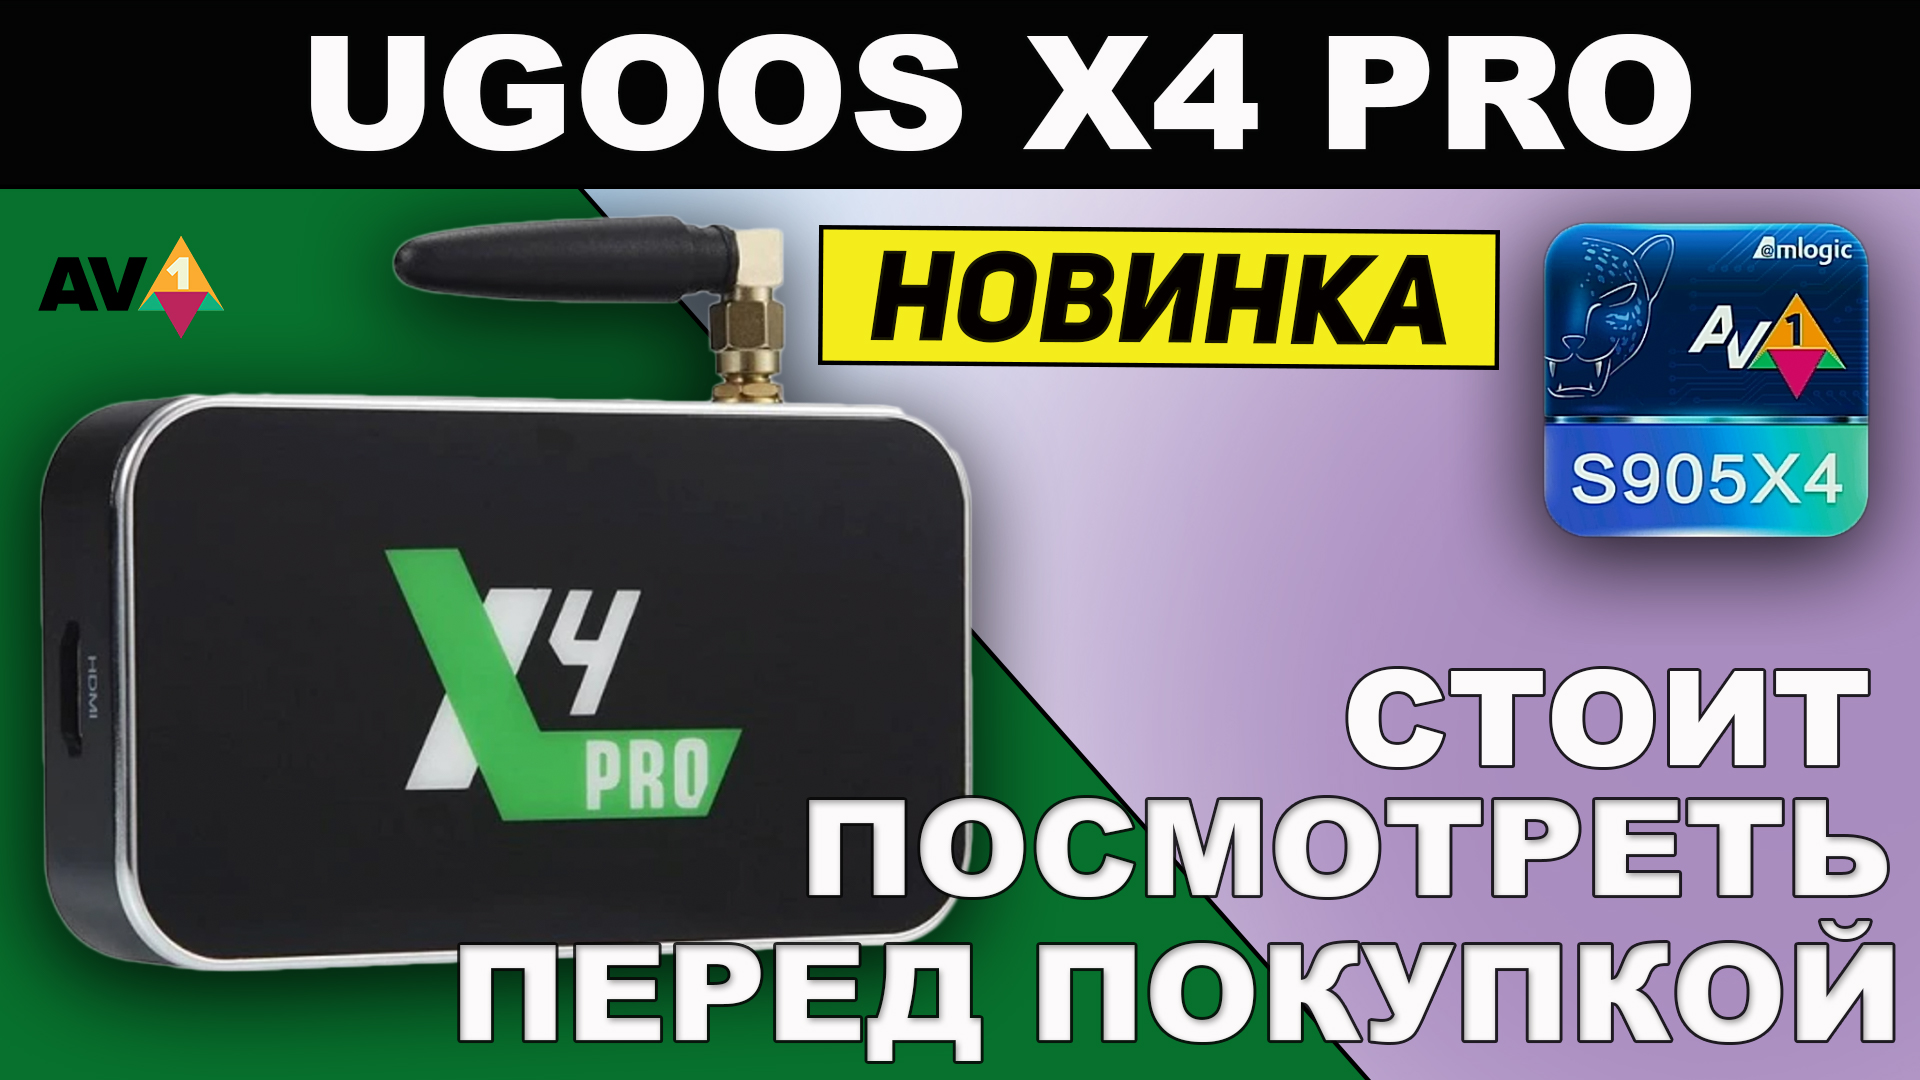 UGOOS X4 PRO — Новинка! Долгожданный и многофункциональный тв бокс на Amlogic S905X4.mp4